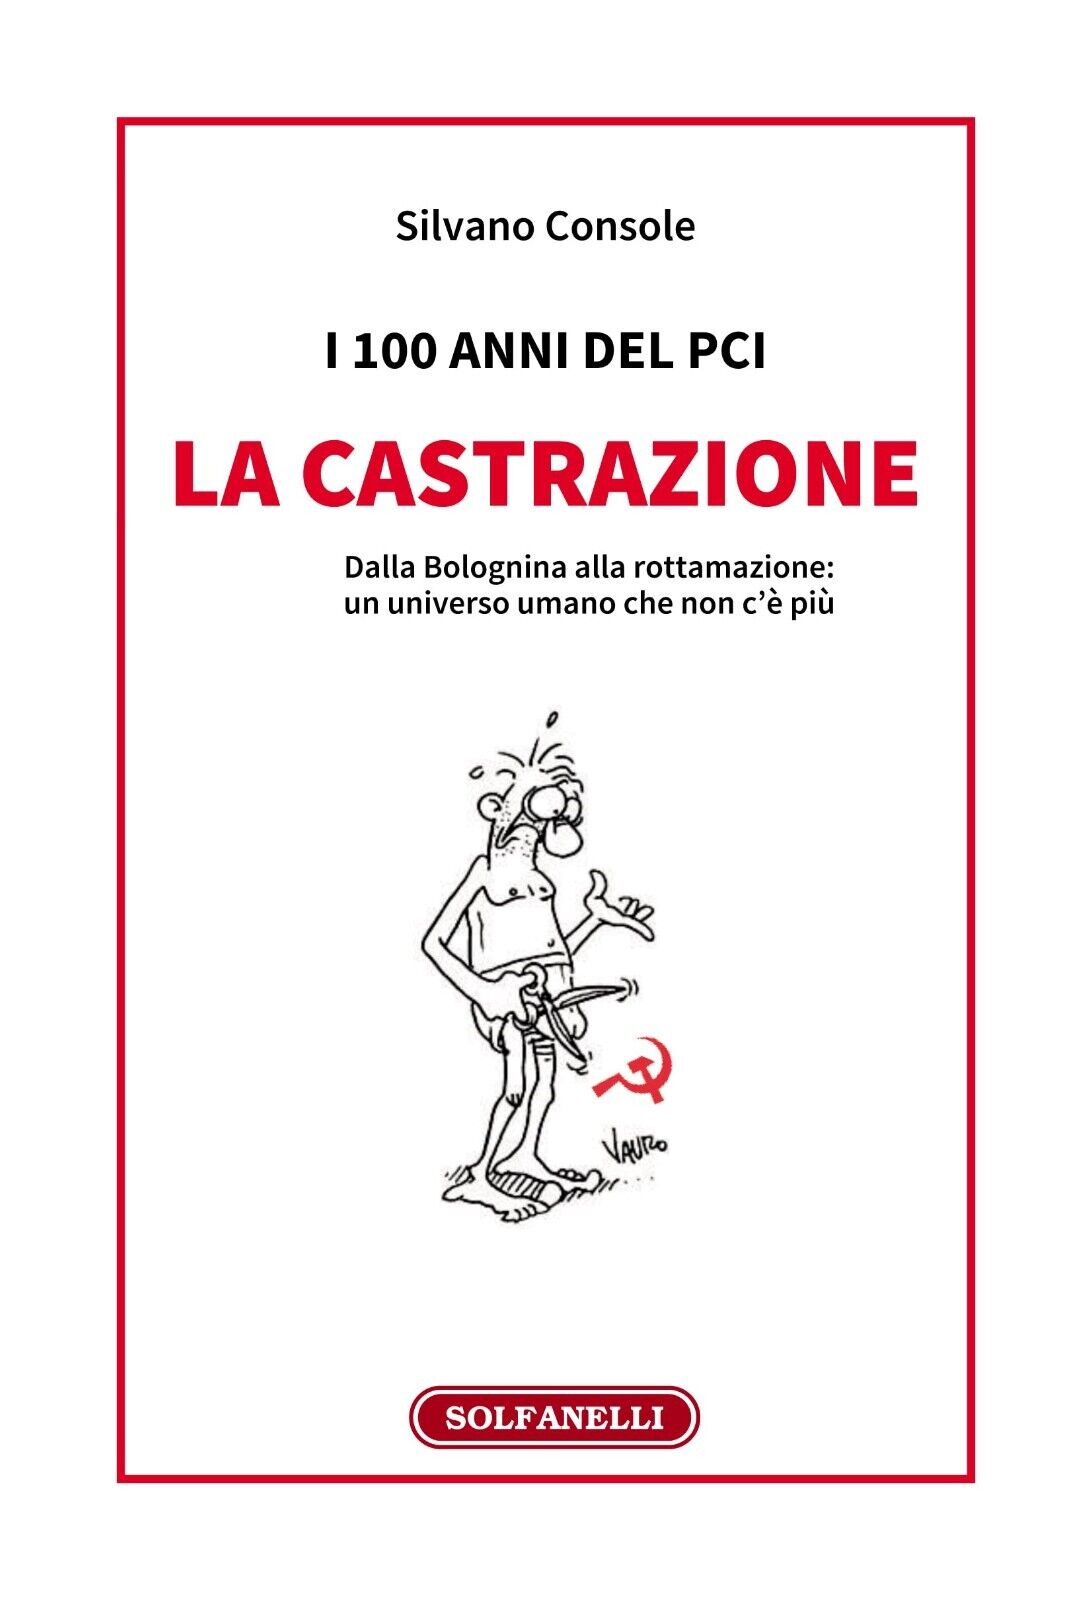  I 100 anni del PCI: la castrazione. Dalla Bolognina alla rottamazione: un unive libro usato